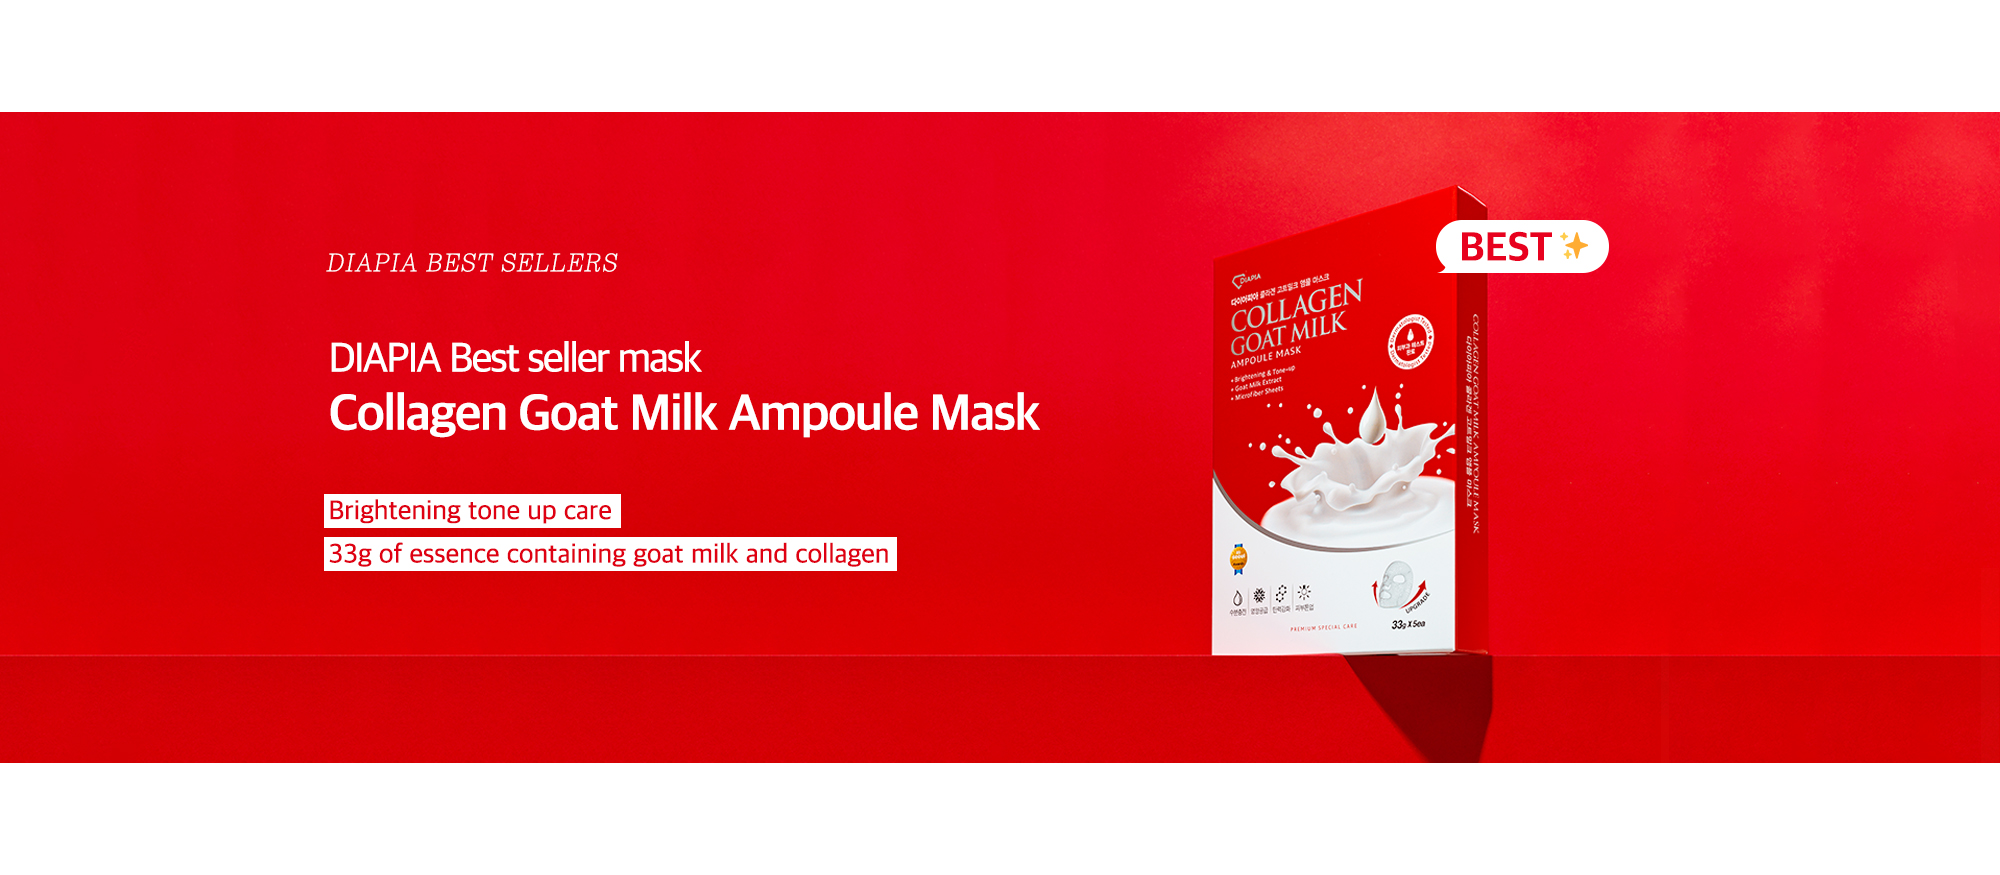 Collagen Goat Milk Ampoule Mask